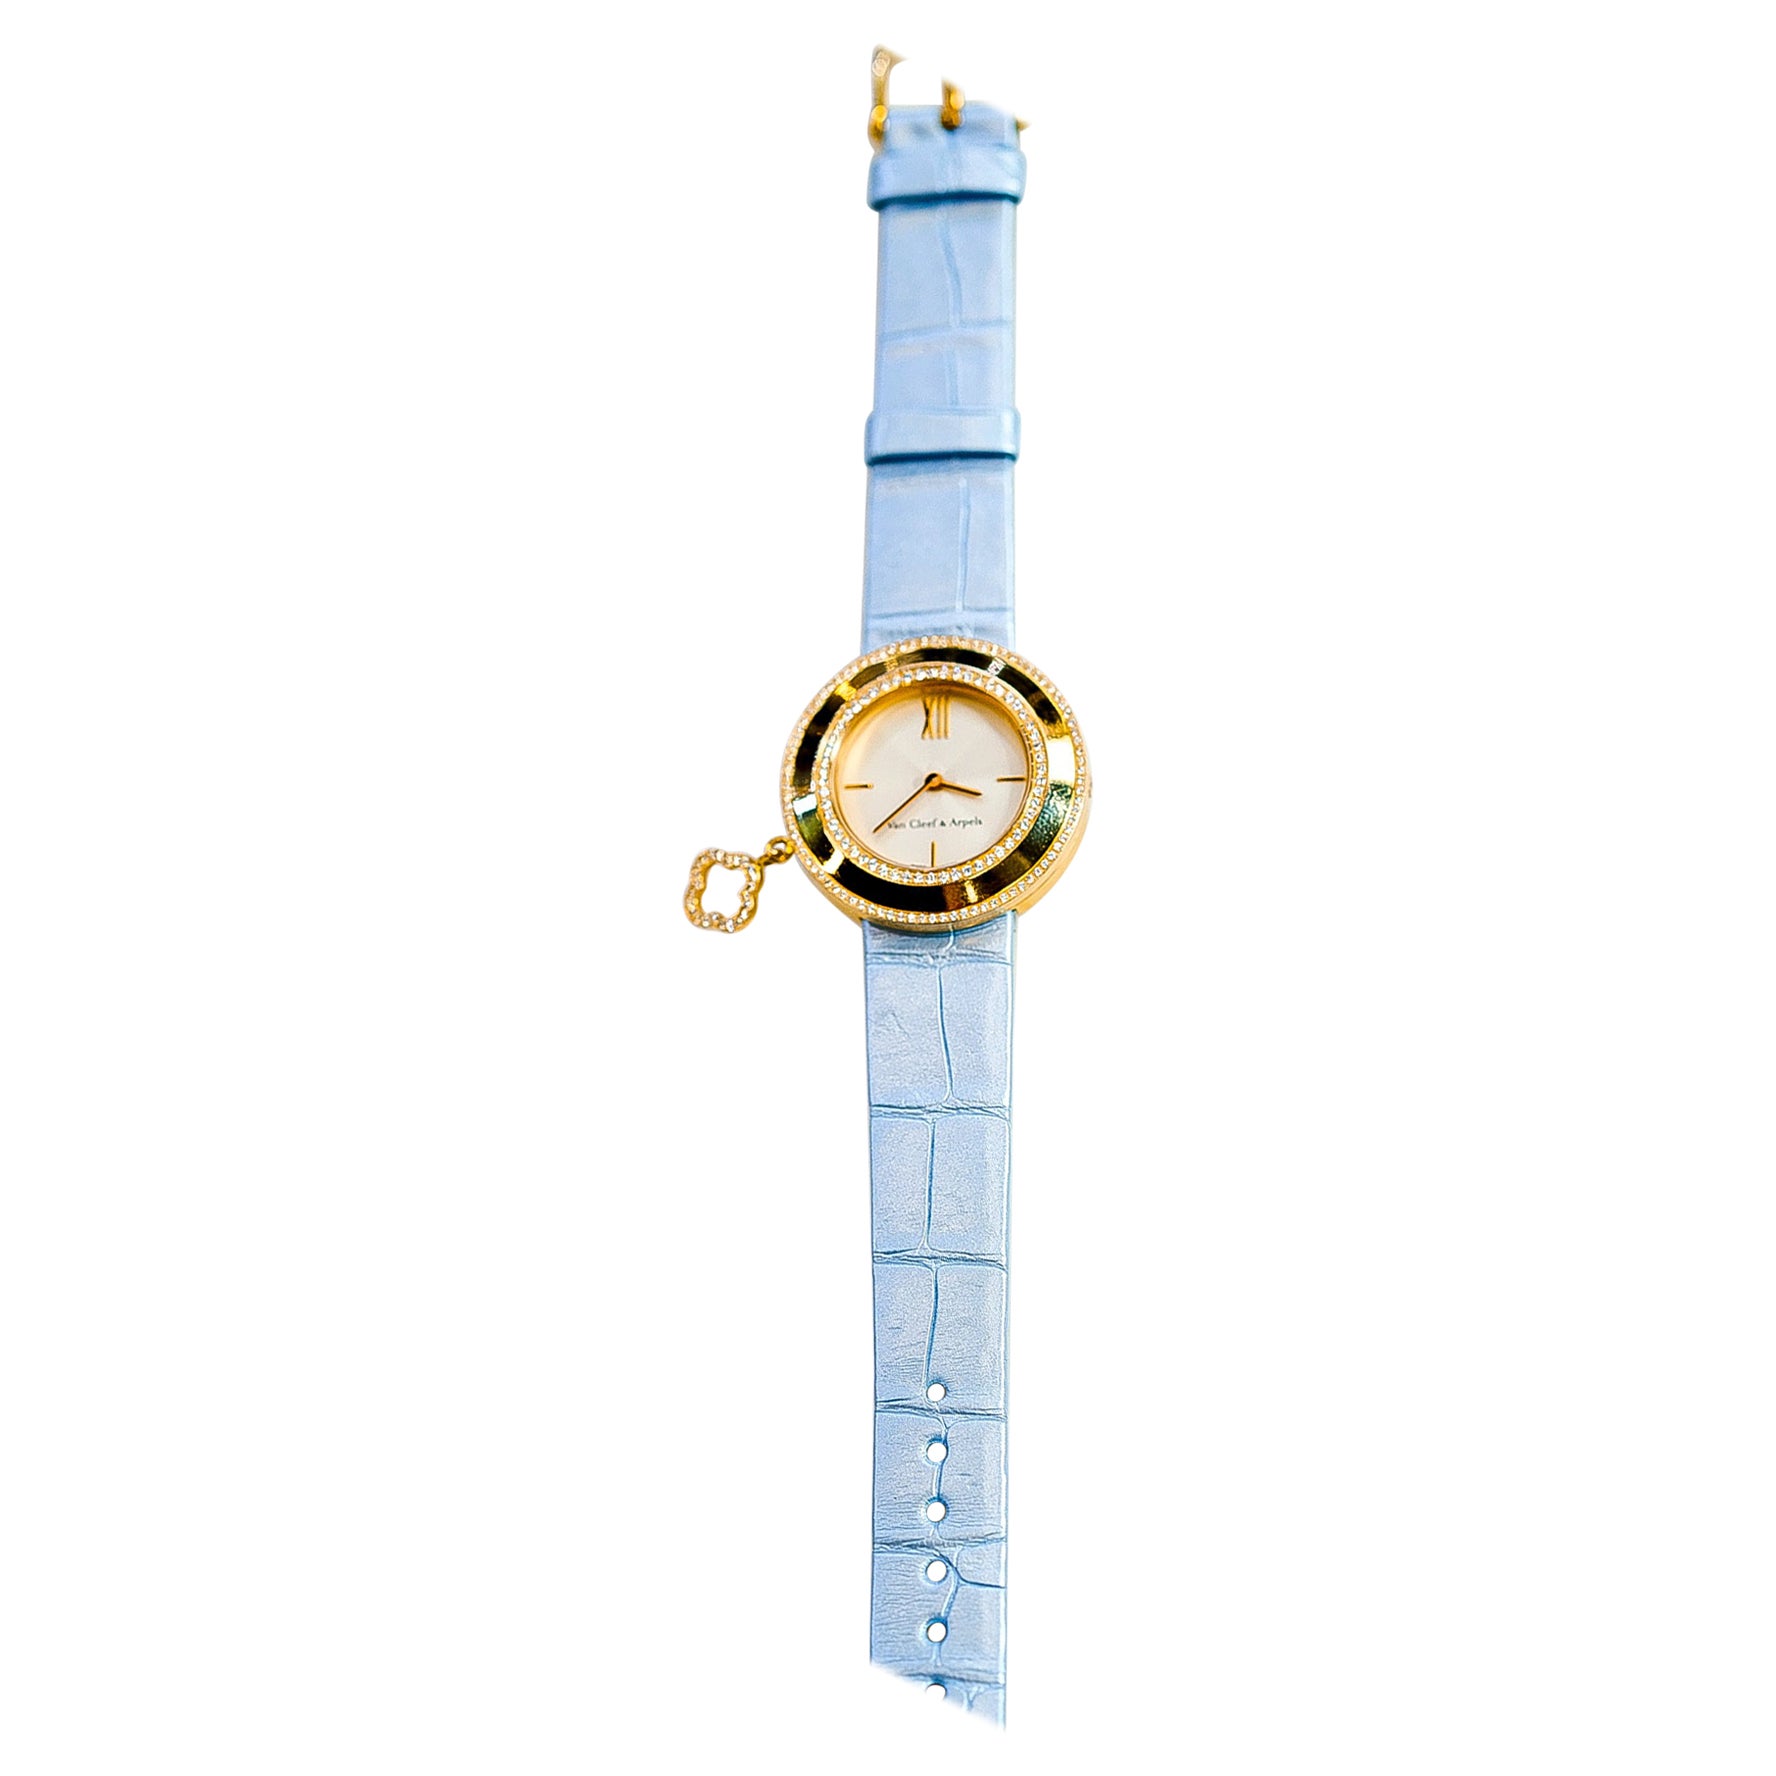 Van Cleef & Arpels 18K Gelbgold Diamant Charme und blaue Alligator Uhr.

Der Inbegriff von Luxus mit dieser atemberaubenden VCA-Charme-Uhr, ein wahres Wunderwerk an Handwerkskunst und Eleganz. 

Dieser sorgfältig aus 18 Karat Gold gefertigte